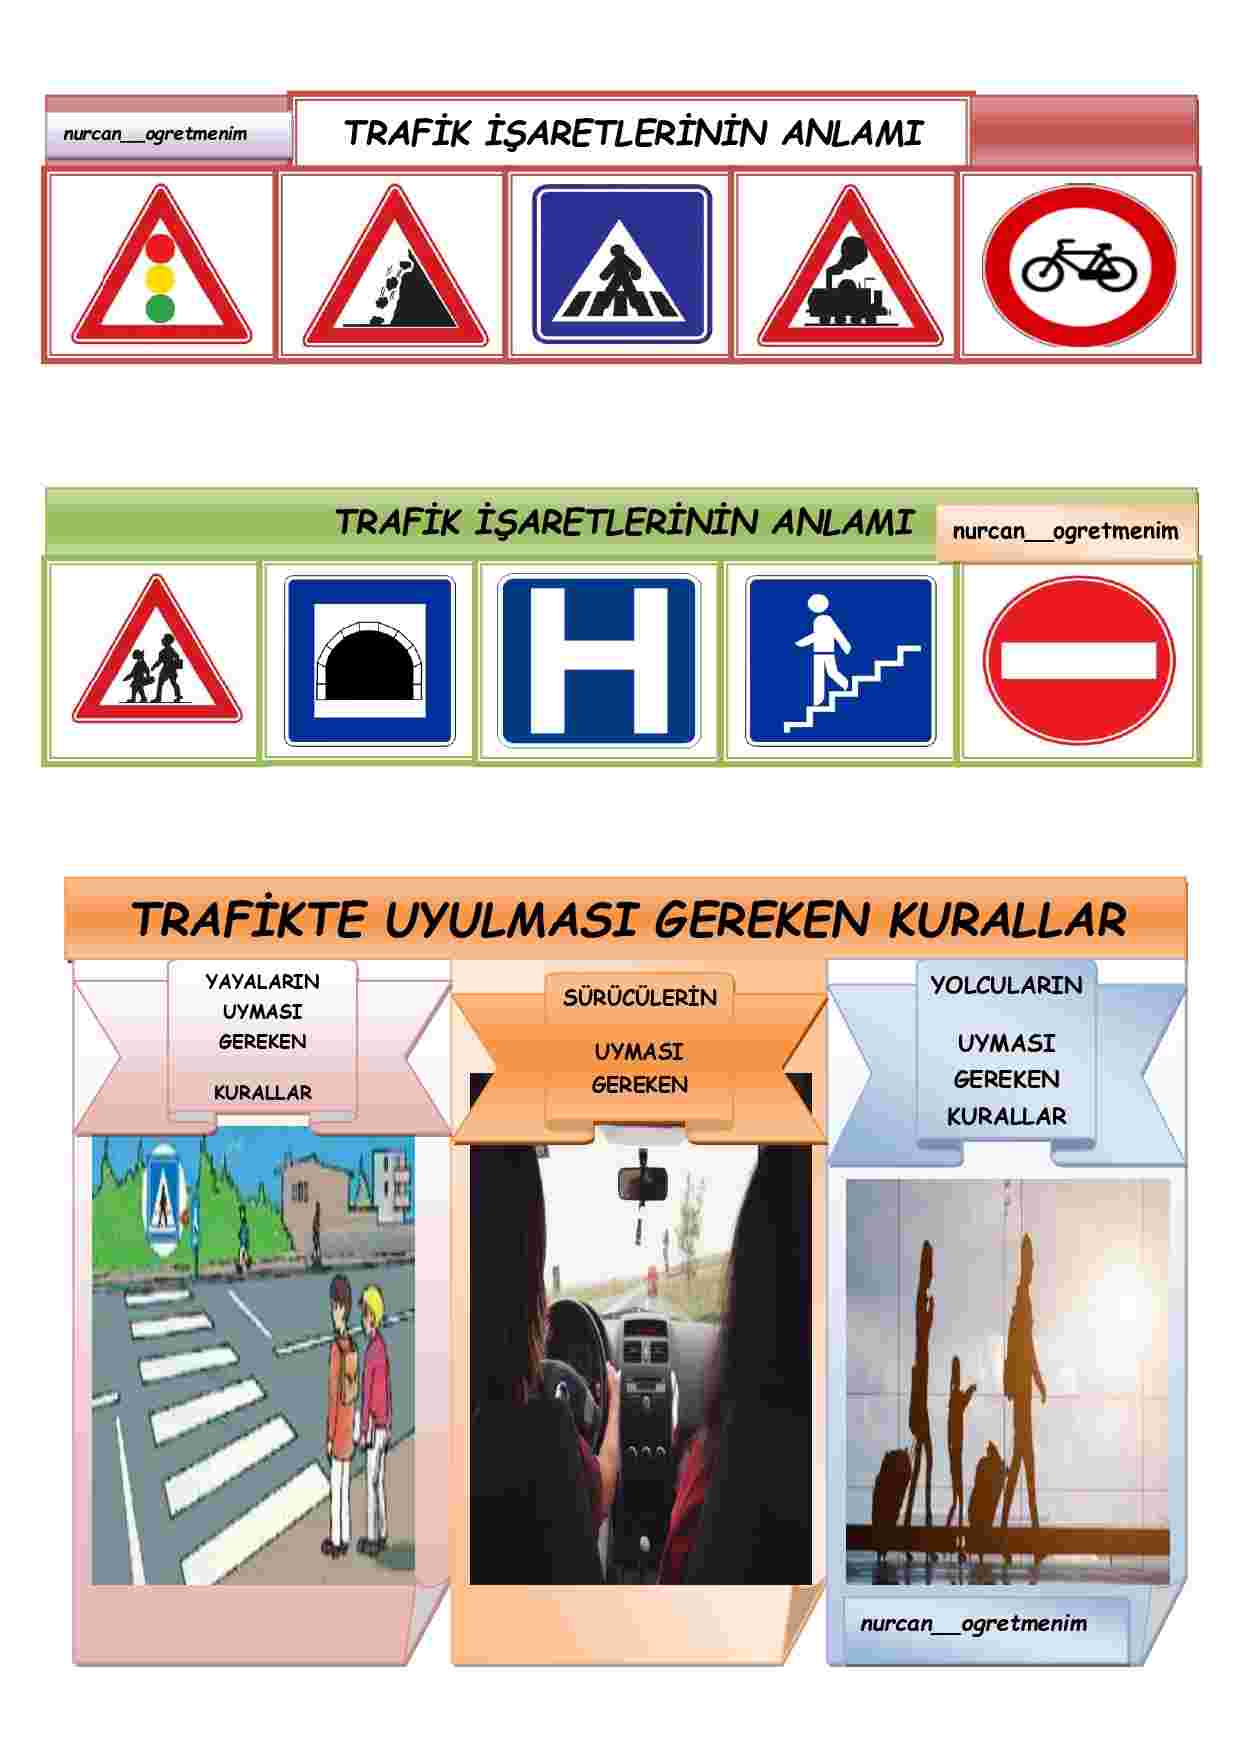 Trafik işaretlerinin anlamı ve trafikte uyulması gereken kurallar